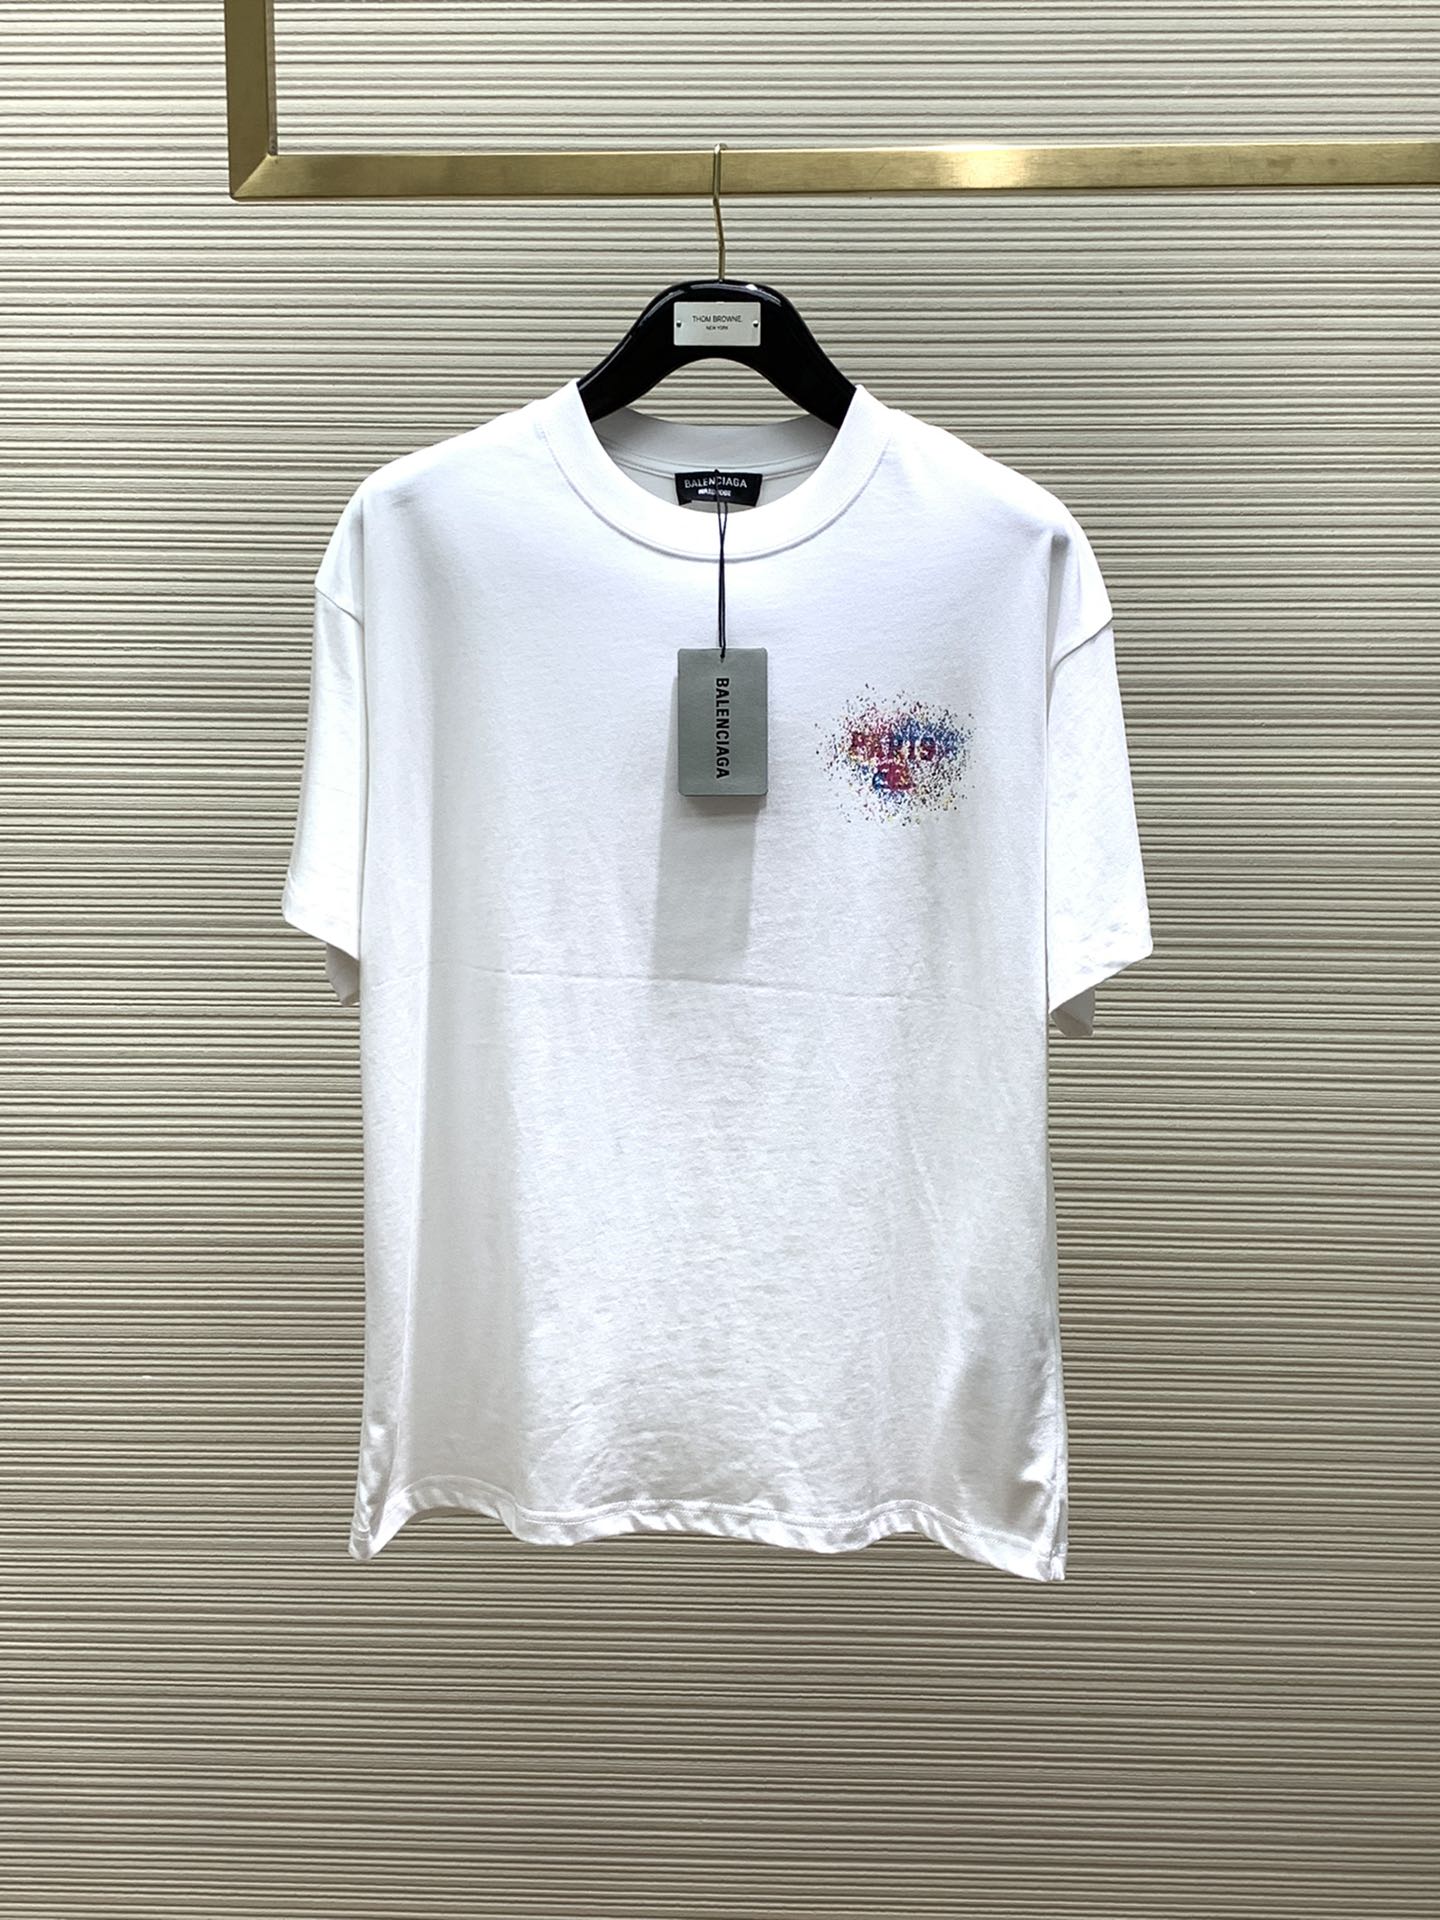 Balenciaga Clothing T-Shirt Printing Summer Collection Fashion Short Sleeve